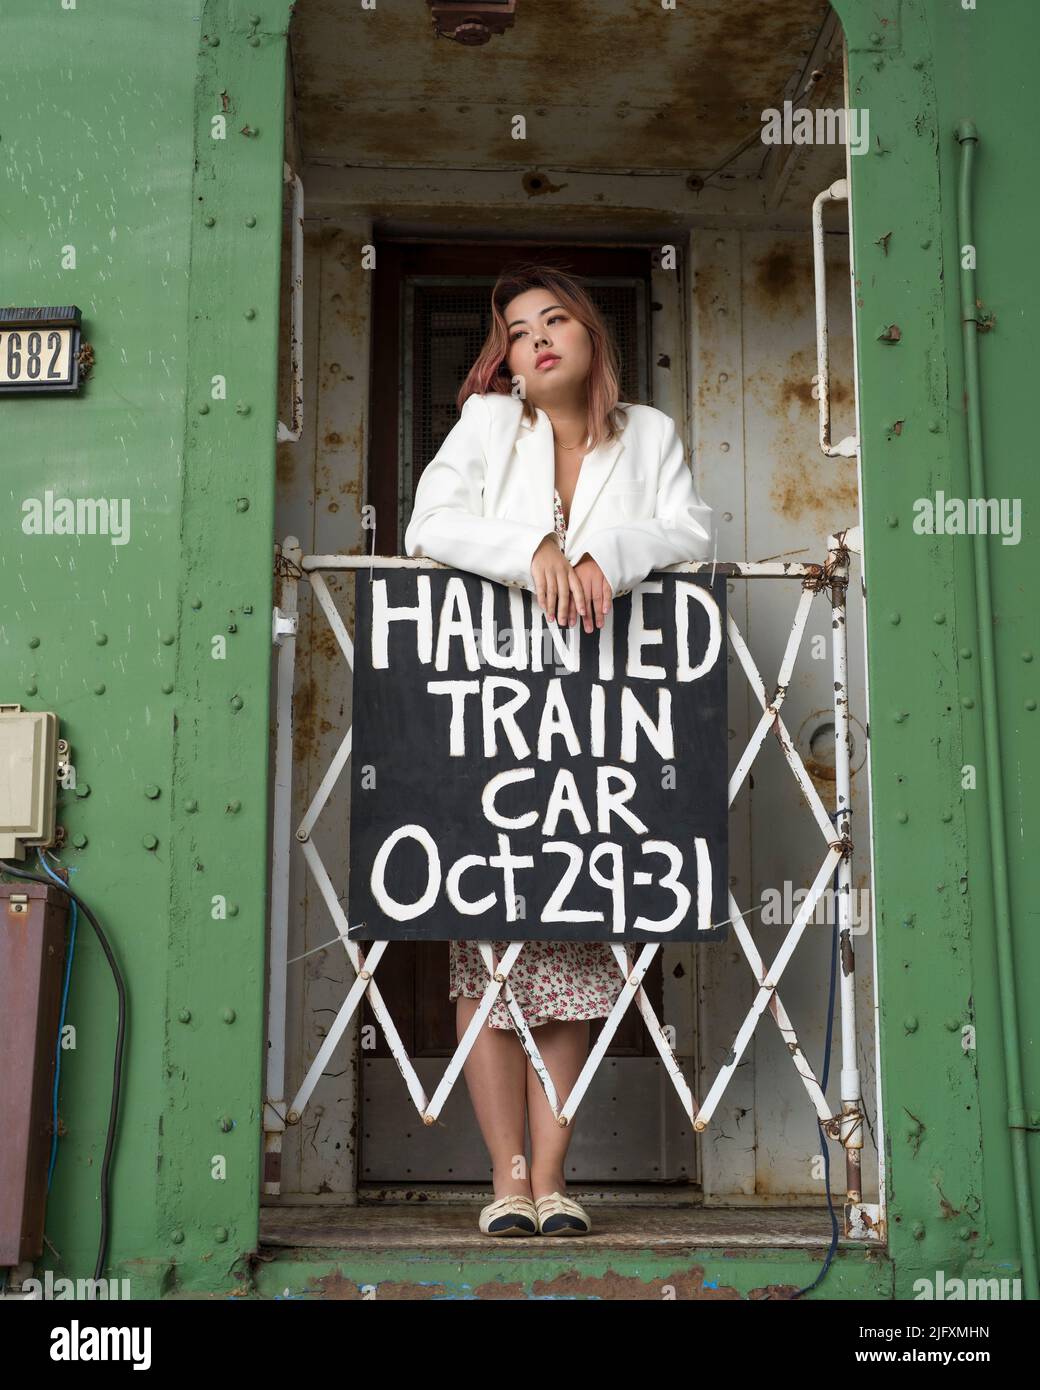 Porträt der schönen jungen Frau auf der Rückseite eines verhahnten Zuges | Halloween-Zug Stockfoto